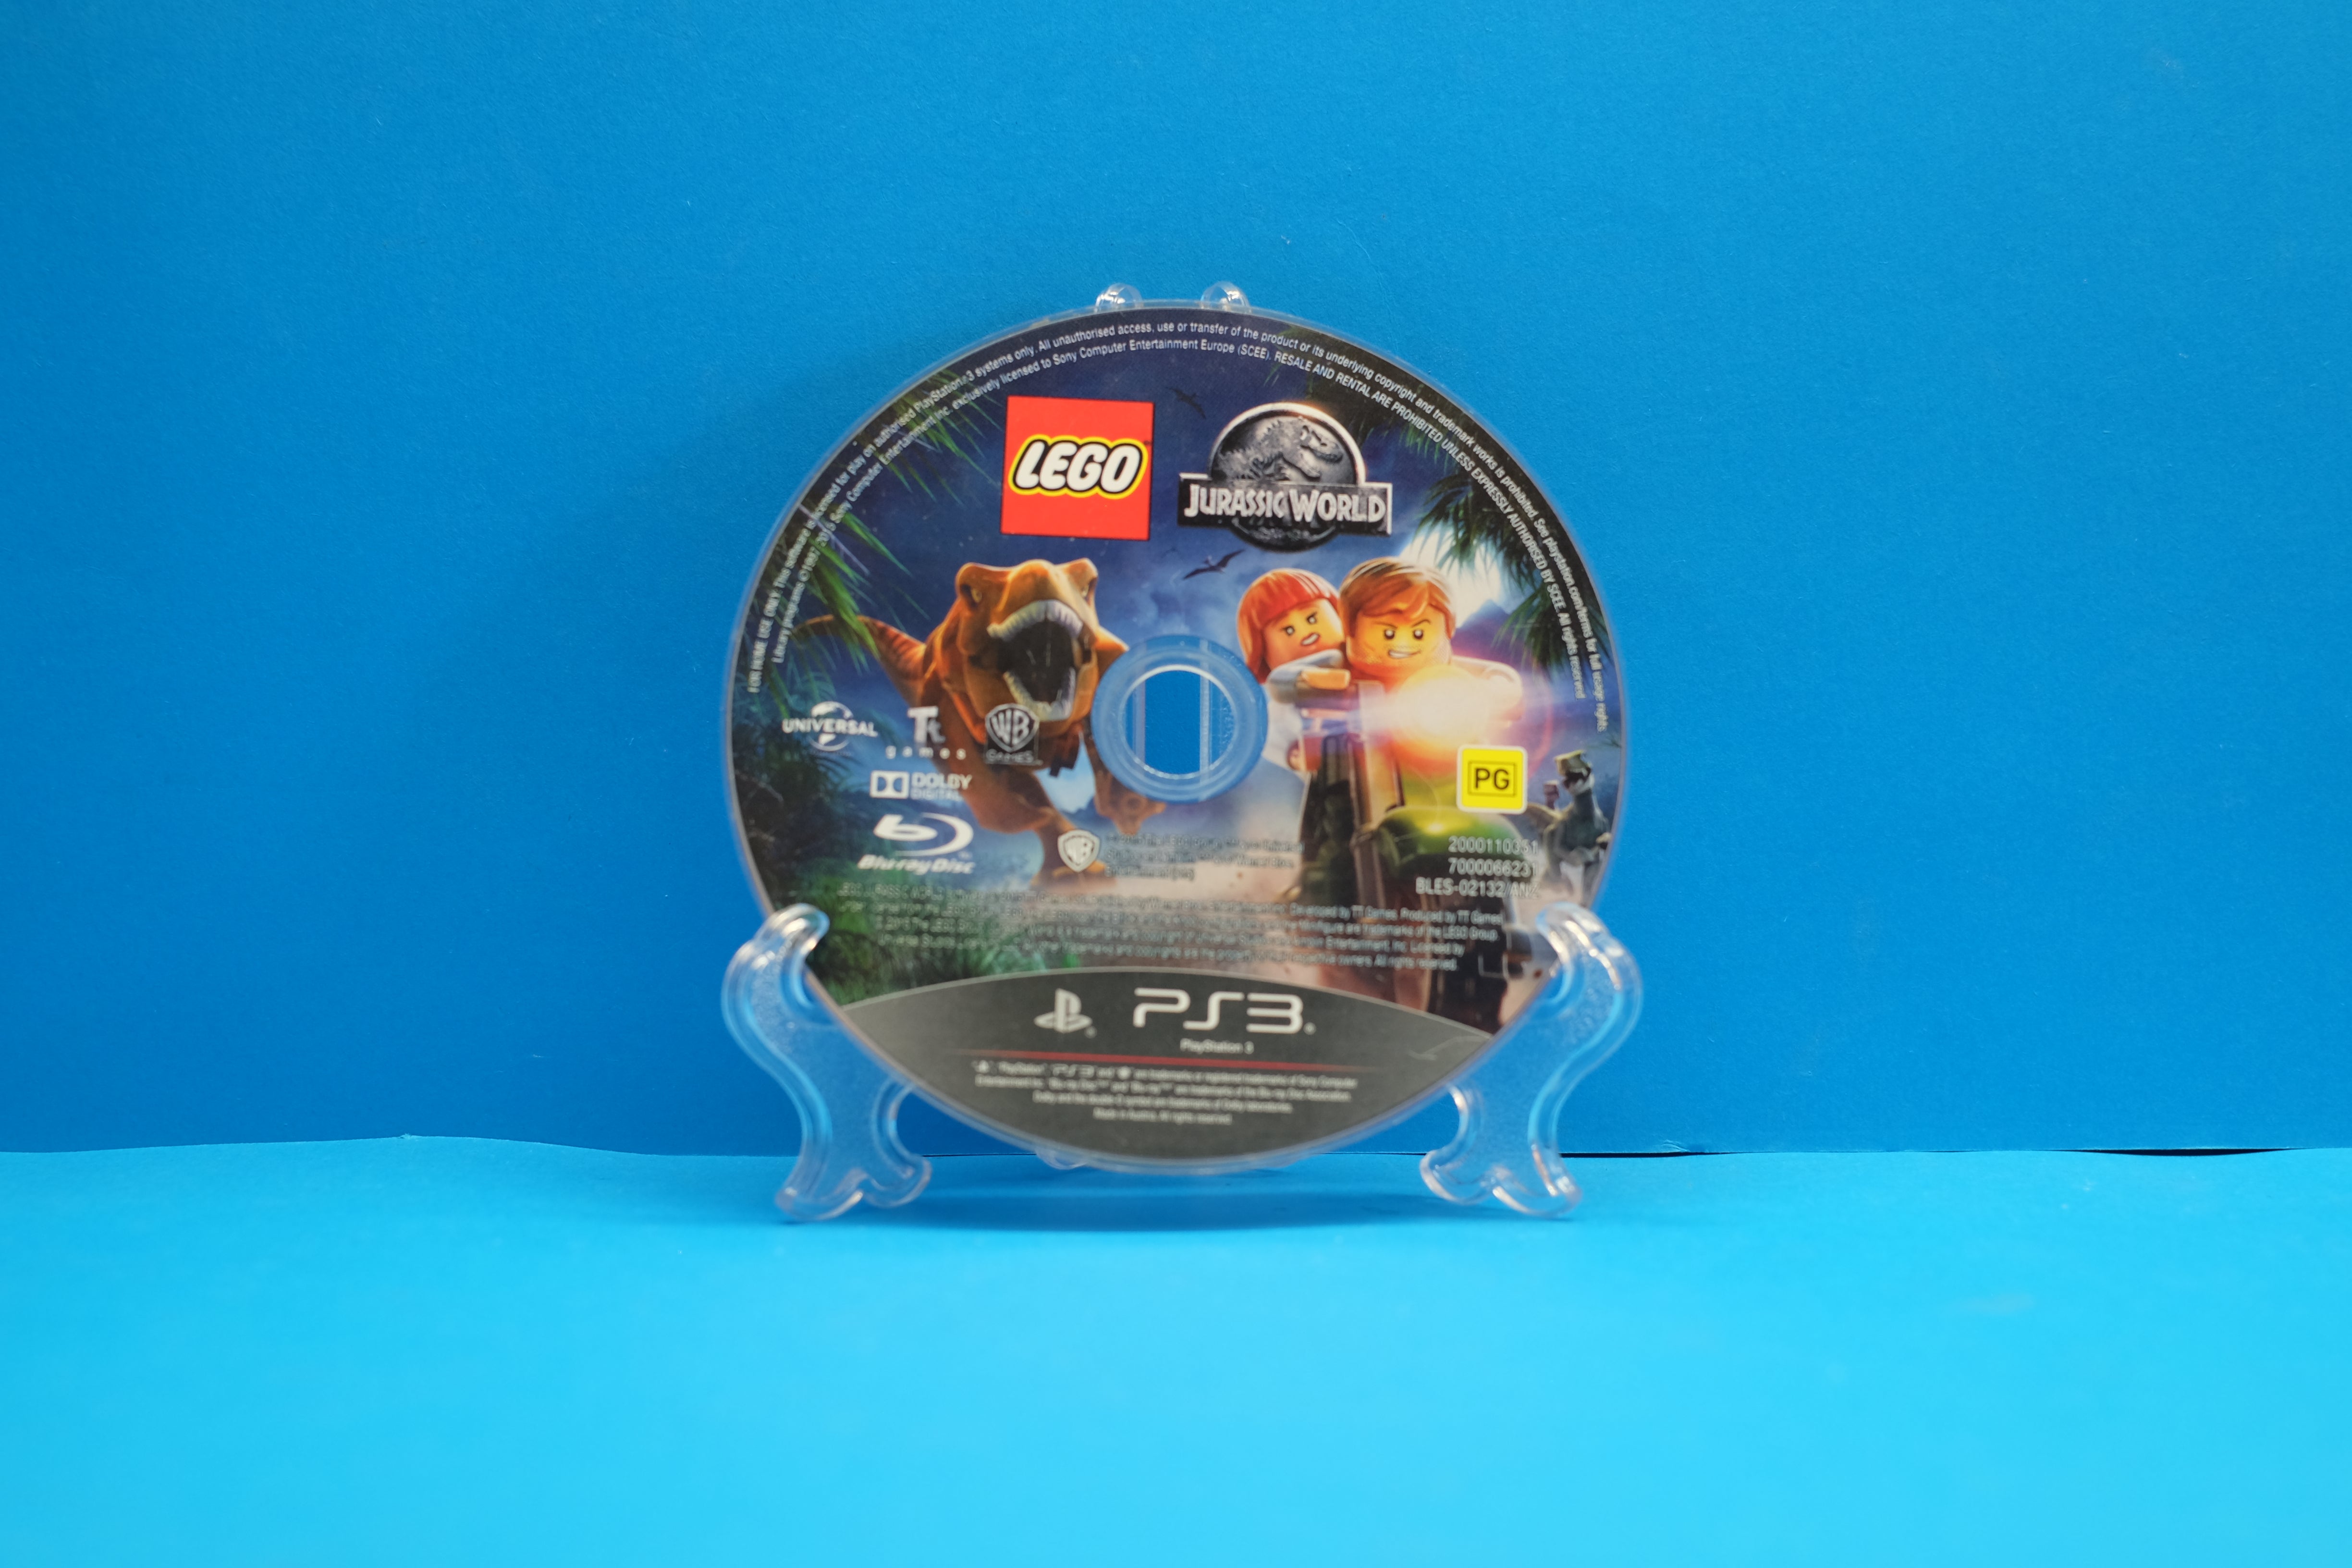 LEGO Jurassic World - PlayStation 3, PlayStation 3